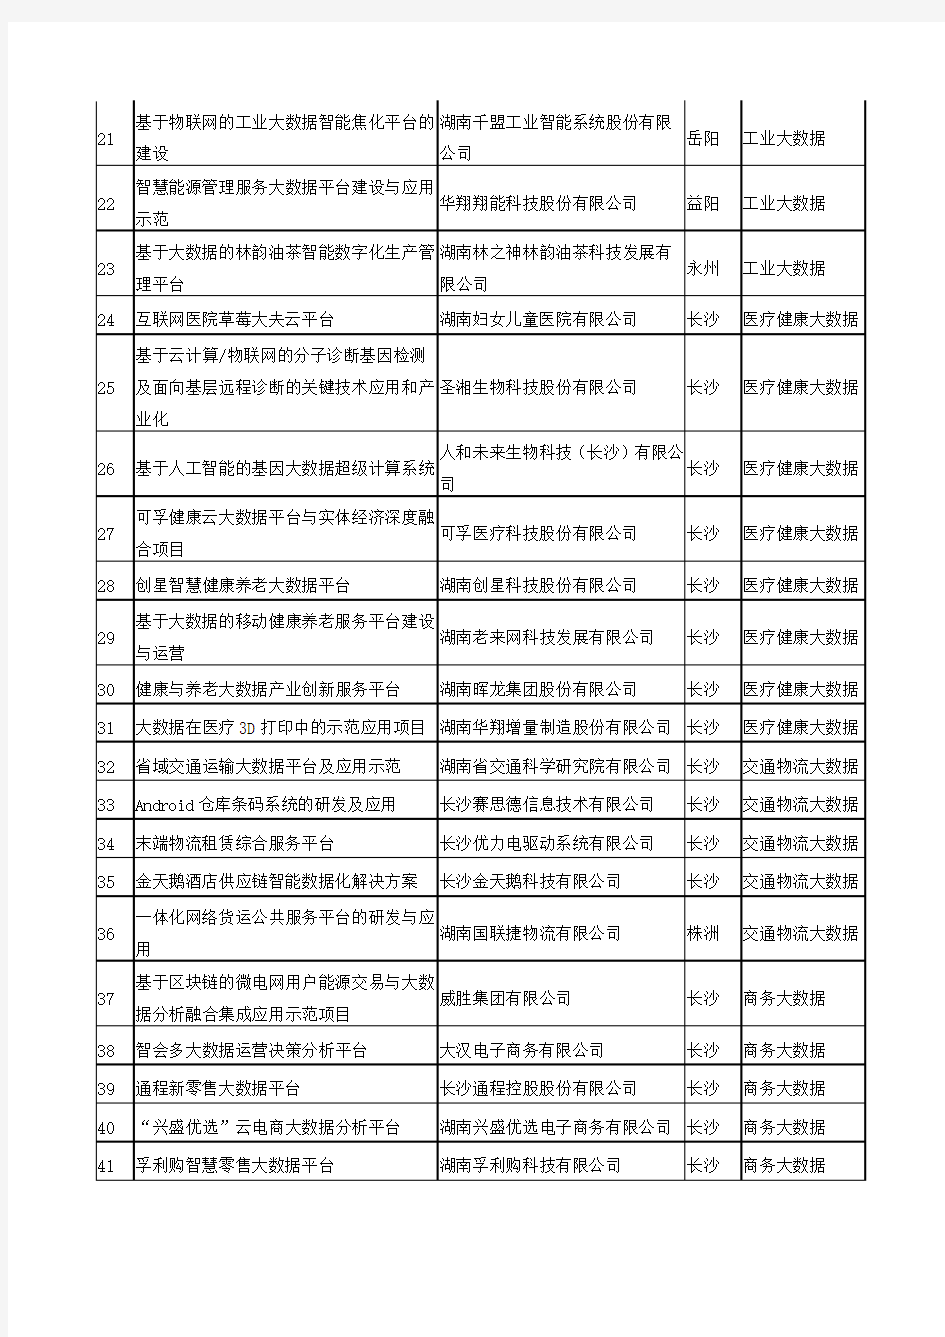 2020年湖南省大数据和区块链产业发展重点项目名单